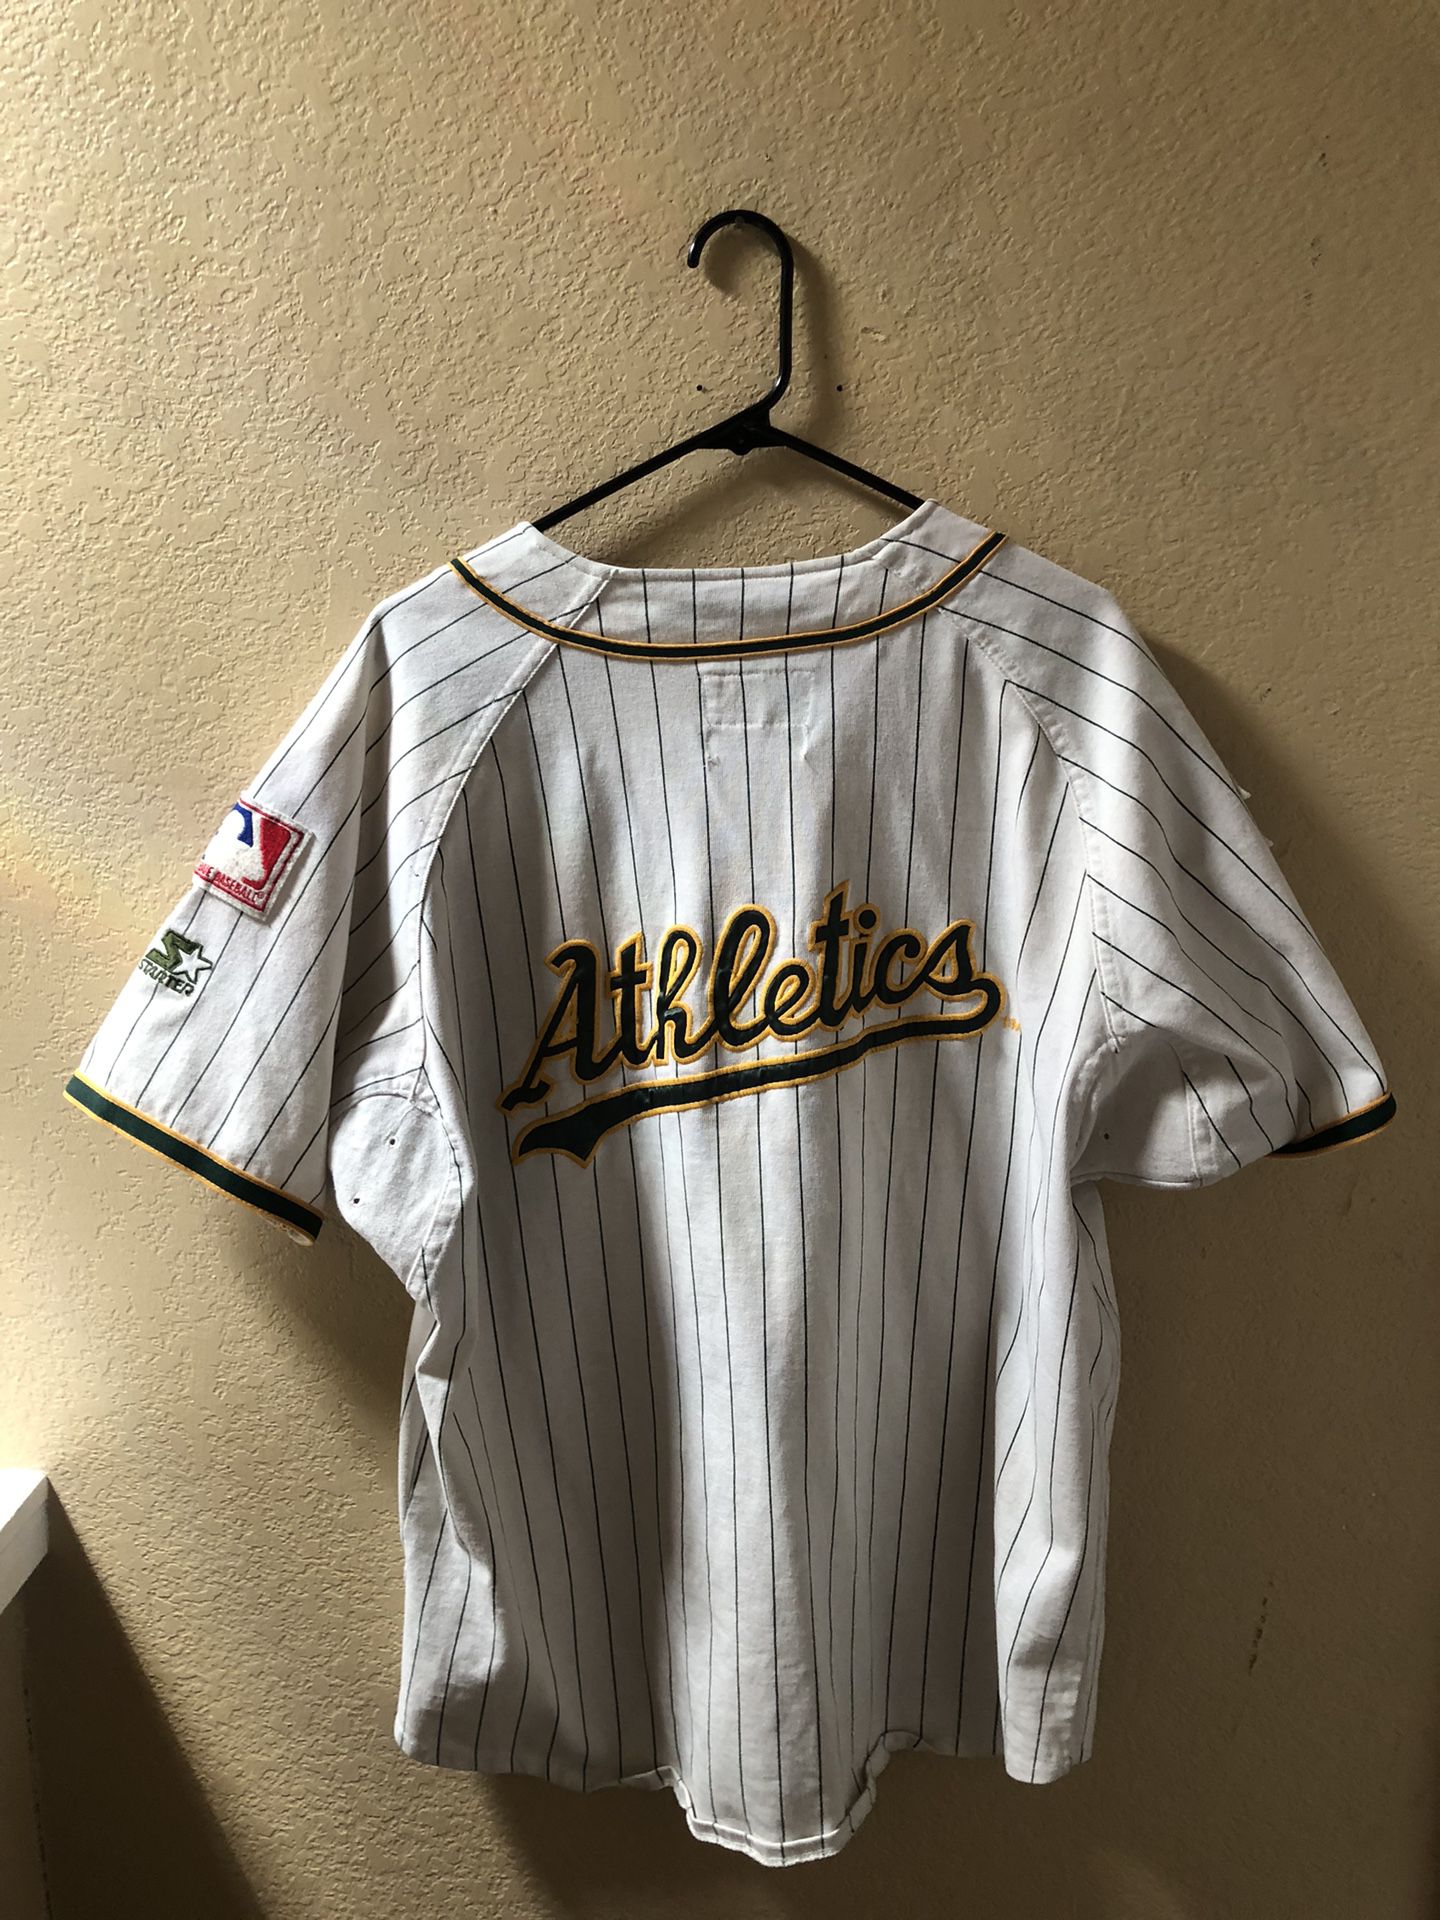 Vintage Oakland Athletics Starter Baseball Jersey for Sale in San